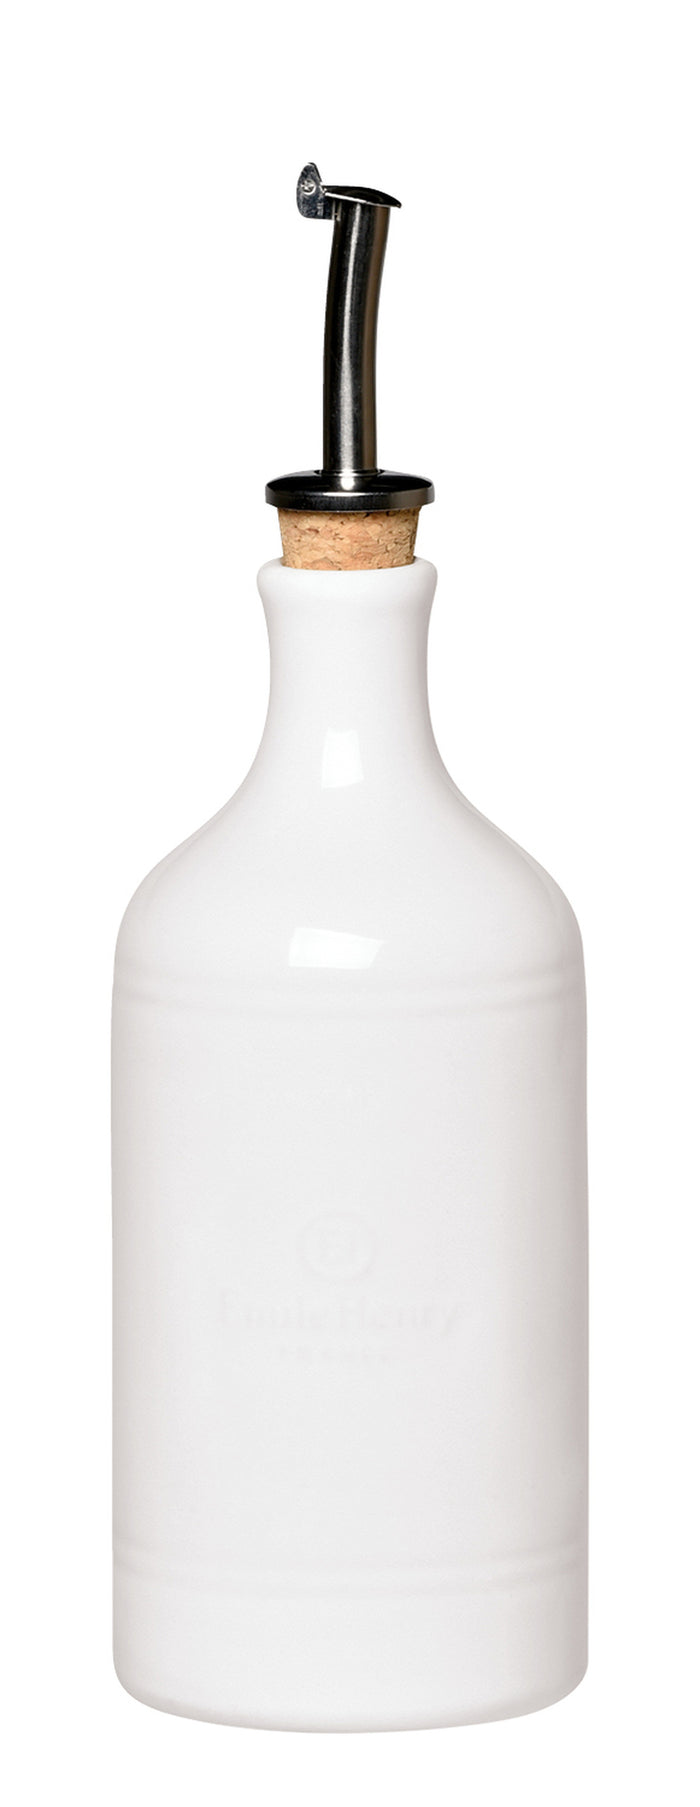 Emile Henry Oil Bottles- Farine (White)